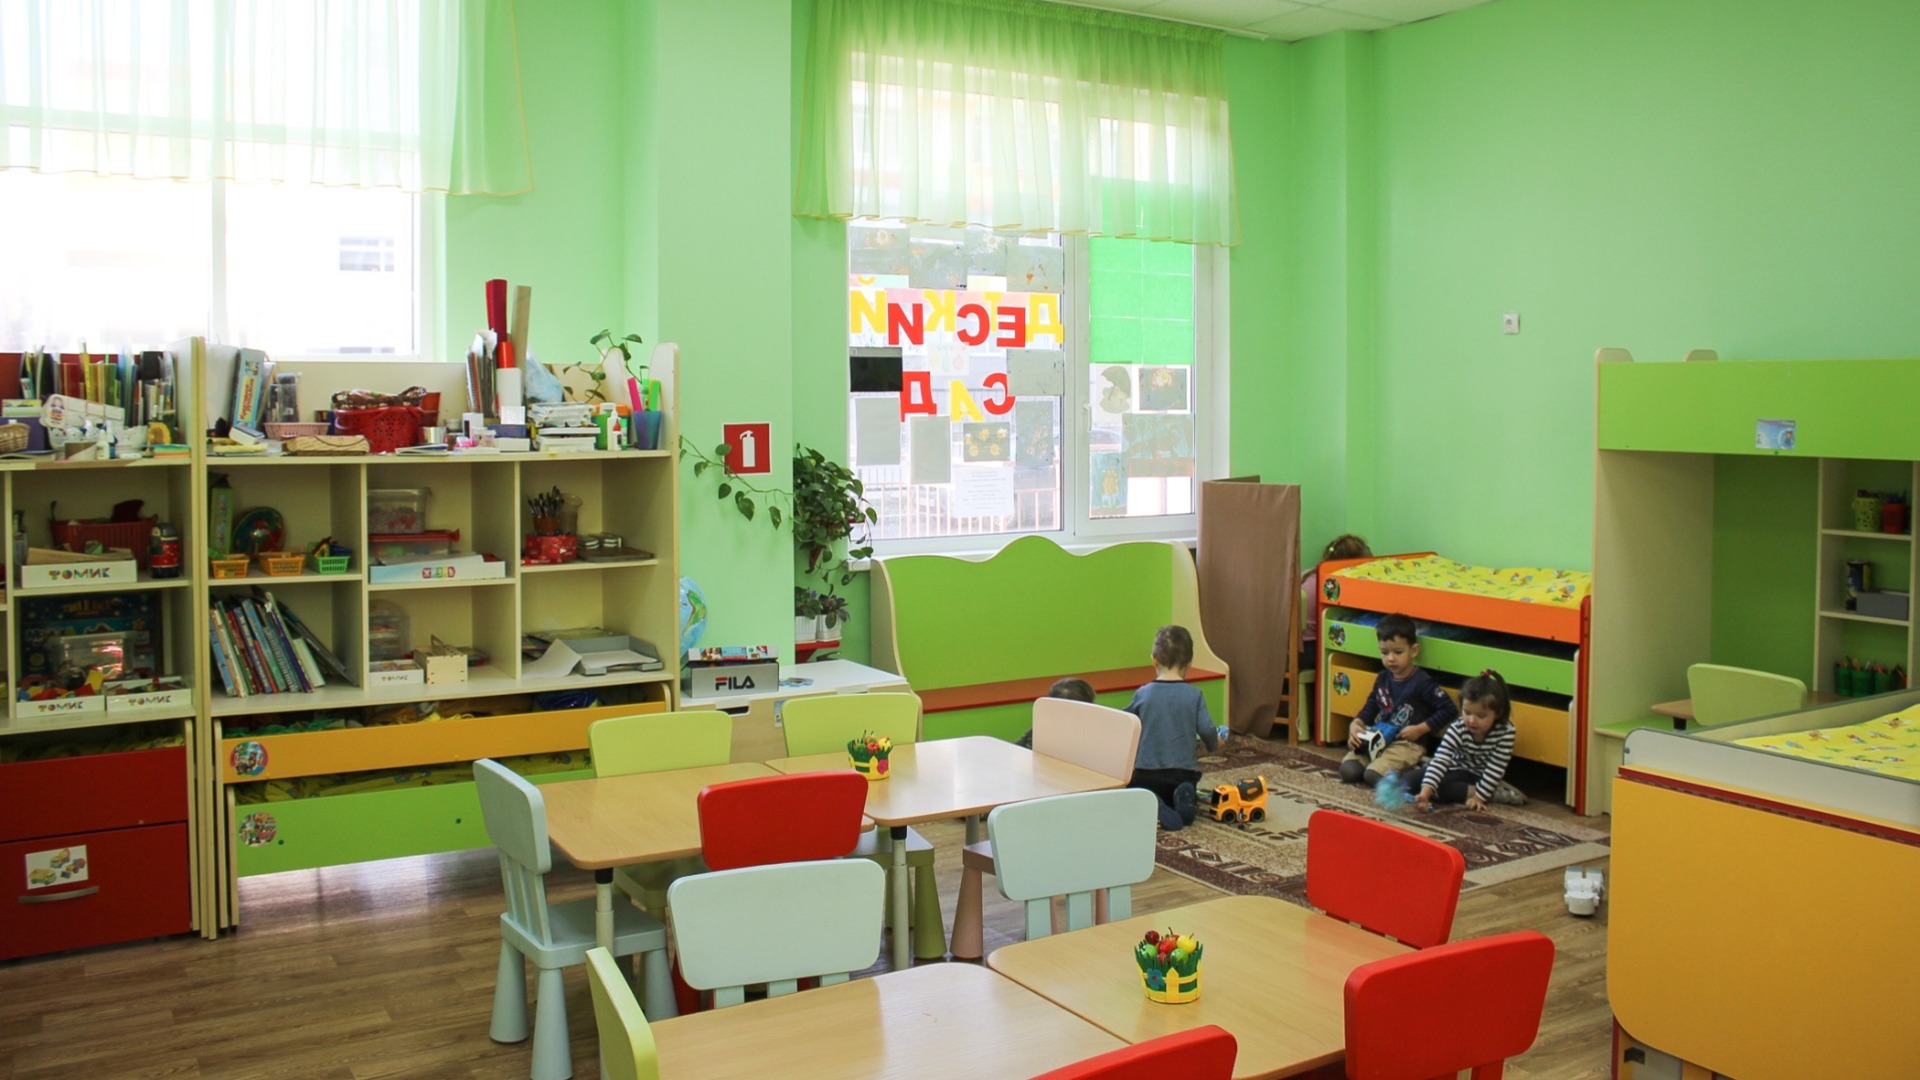 Построить убежище под действующими белгородскими школами нельзя